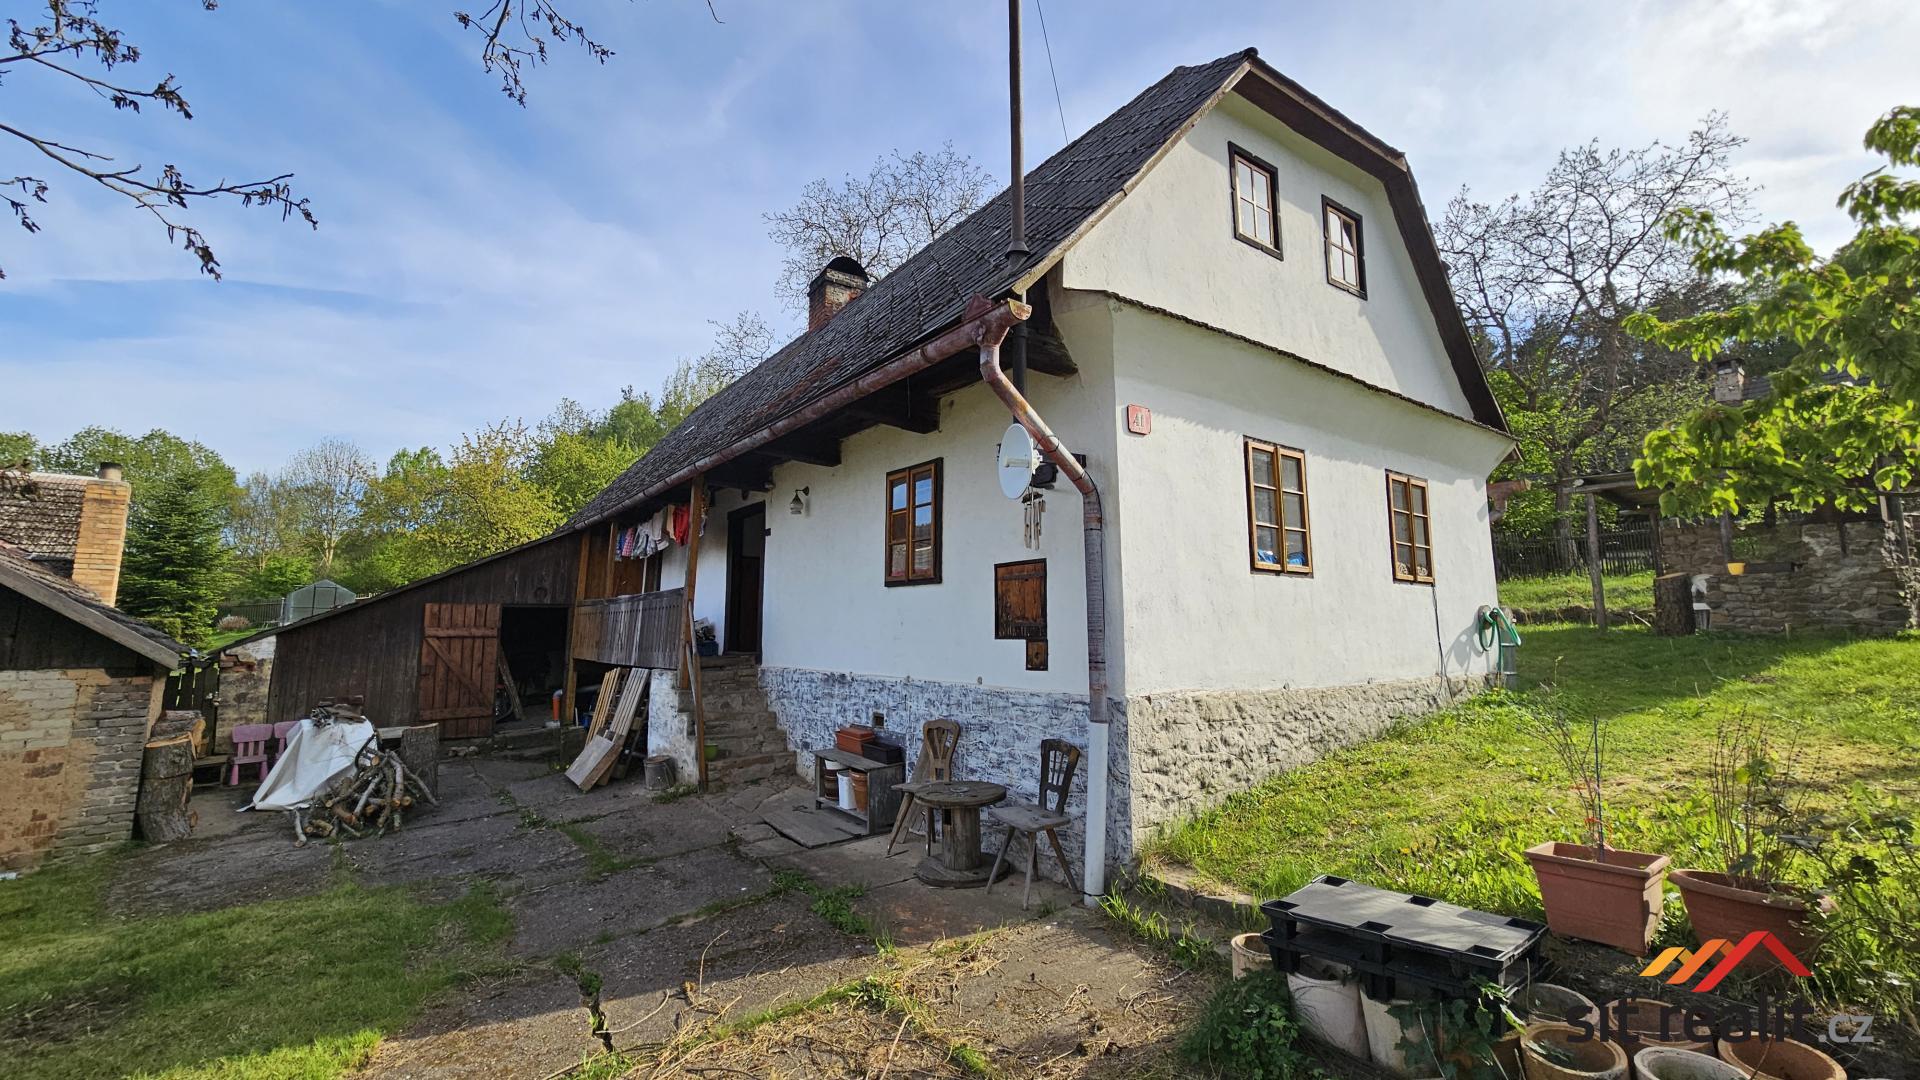 Prodej chalupy v obci Křešín, okr. Příbram, 100m2, pozemek 430 m2, krásné okolí